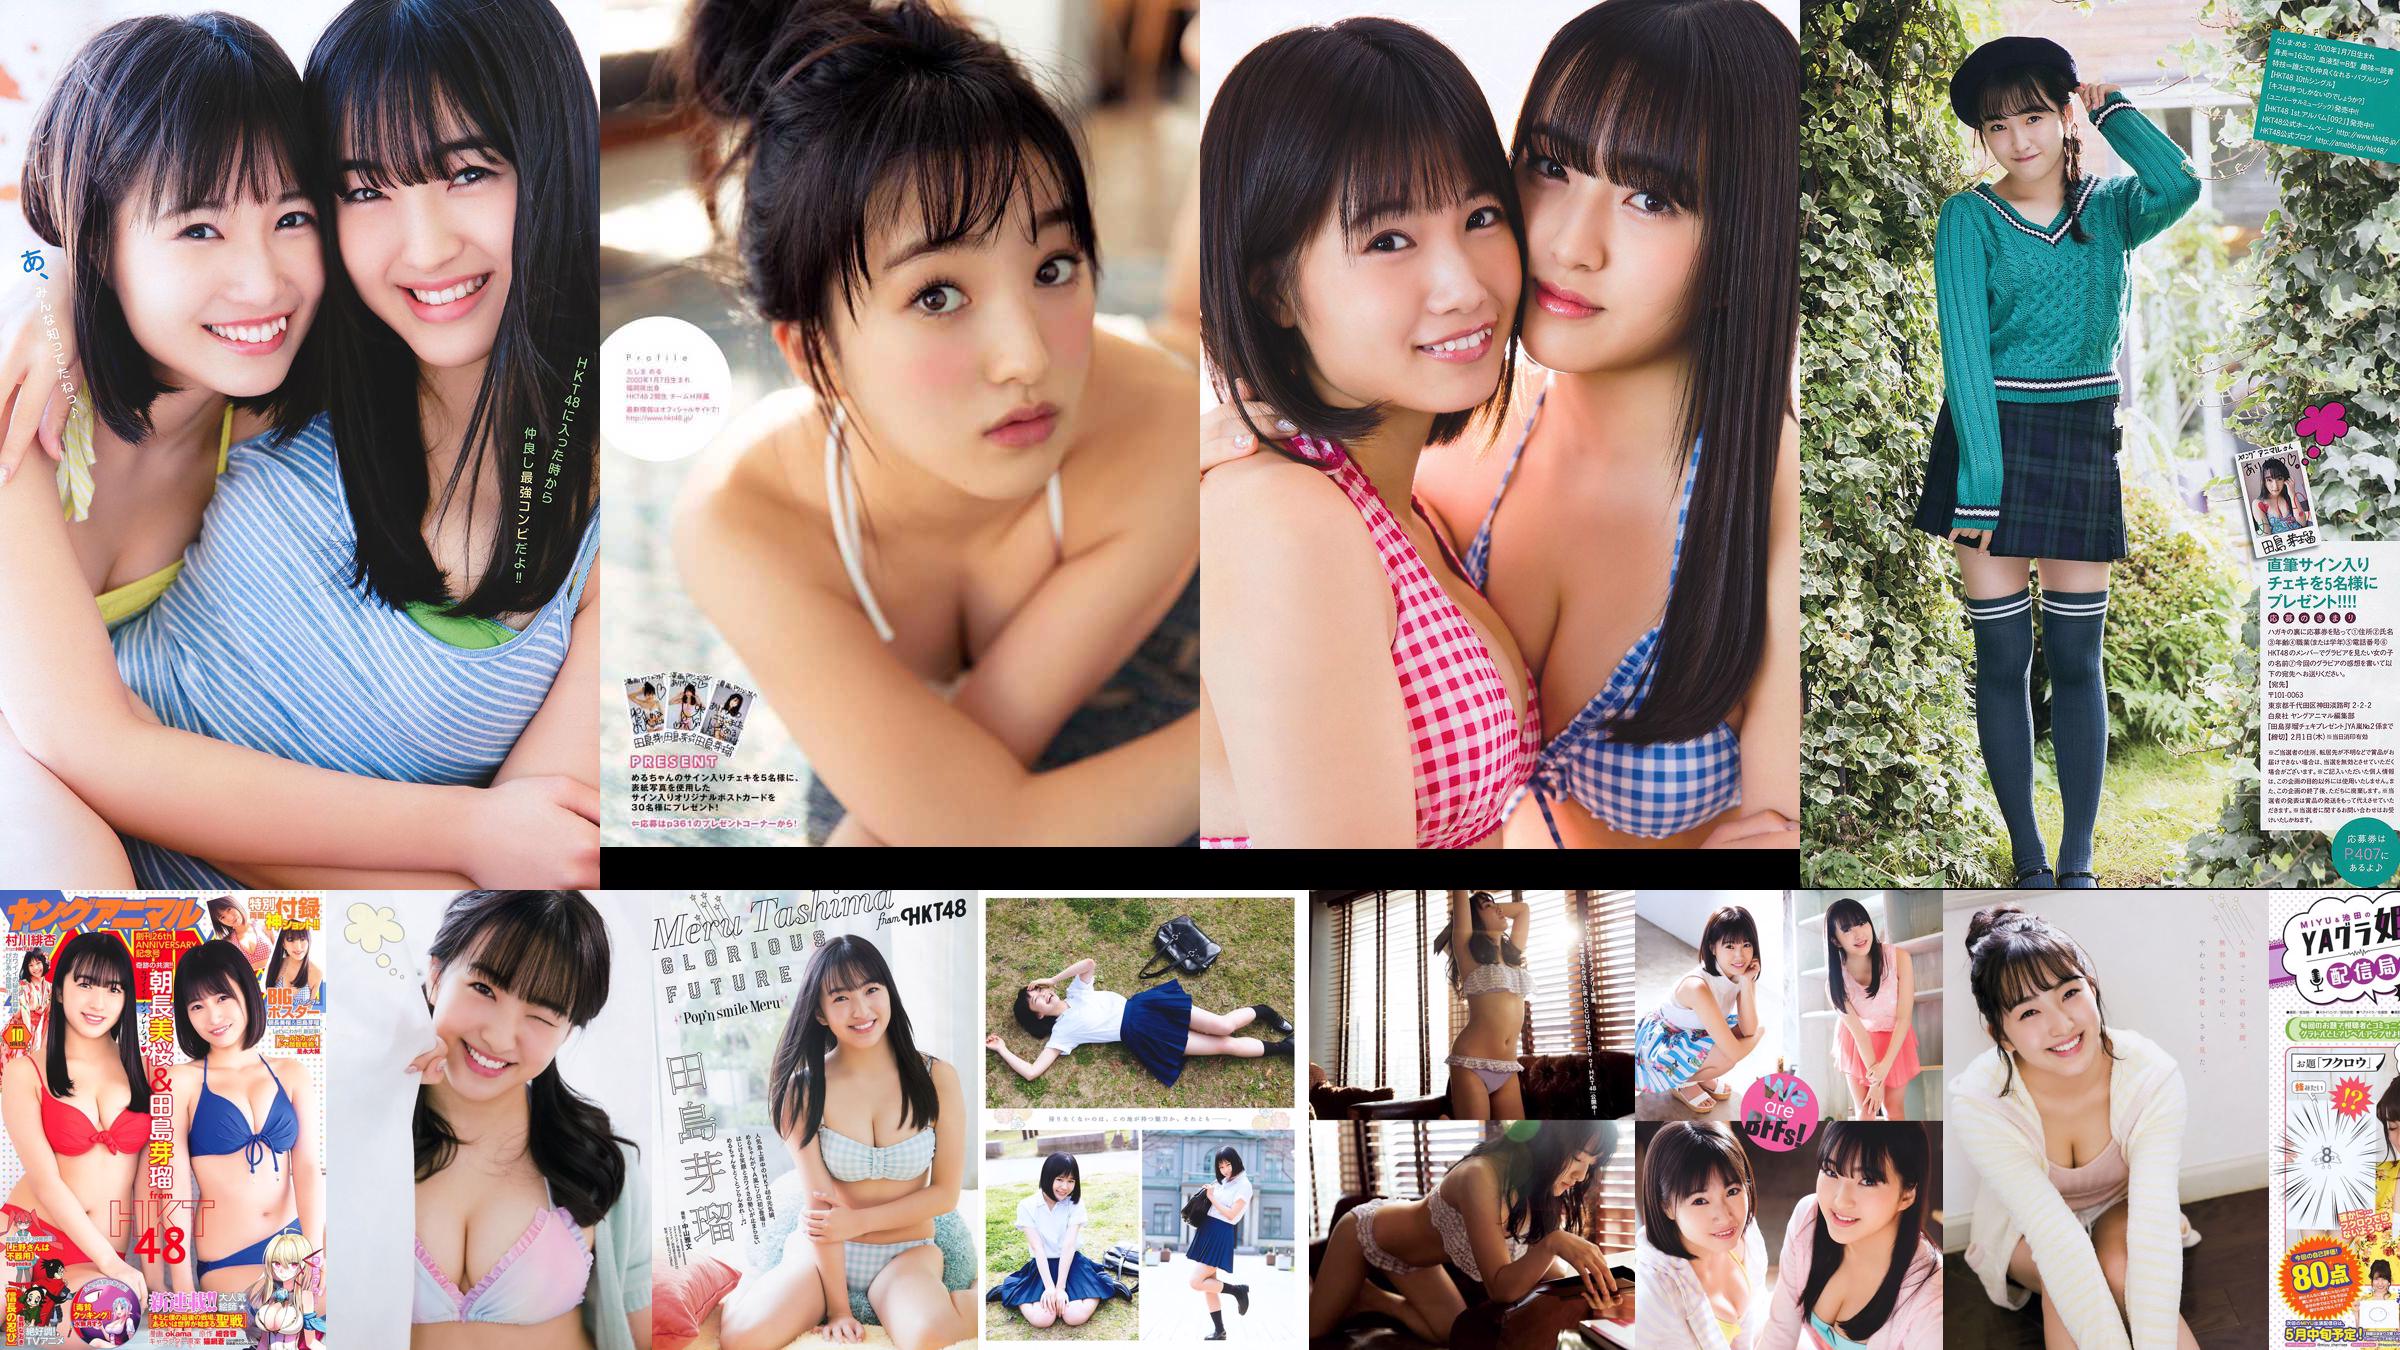 Nana Ayano Yuka Someya [Young Animal Arashi Special Edition] No.06 2015 Photograph No.9e23dd Page 1